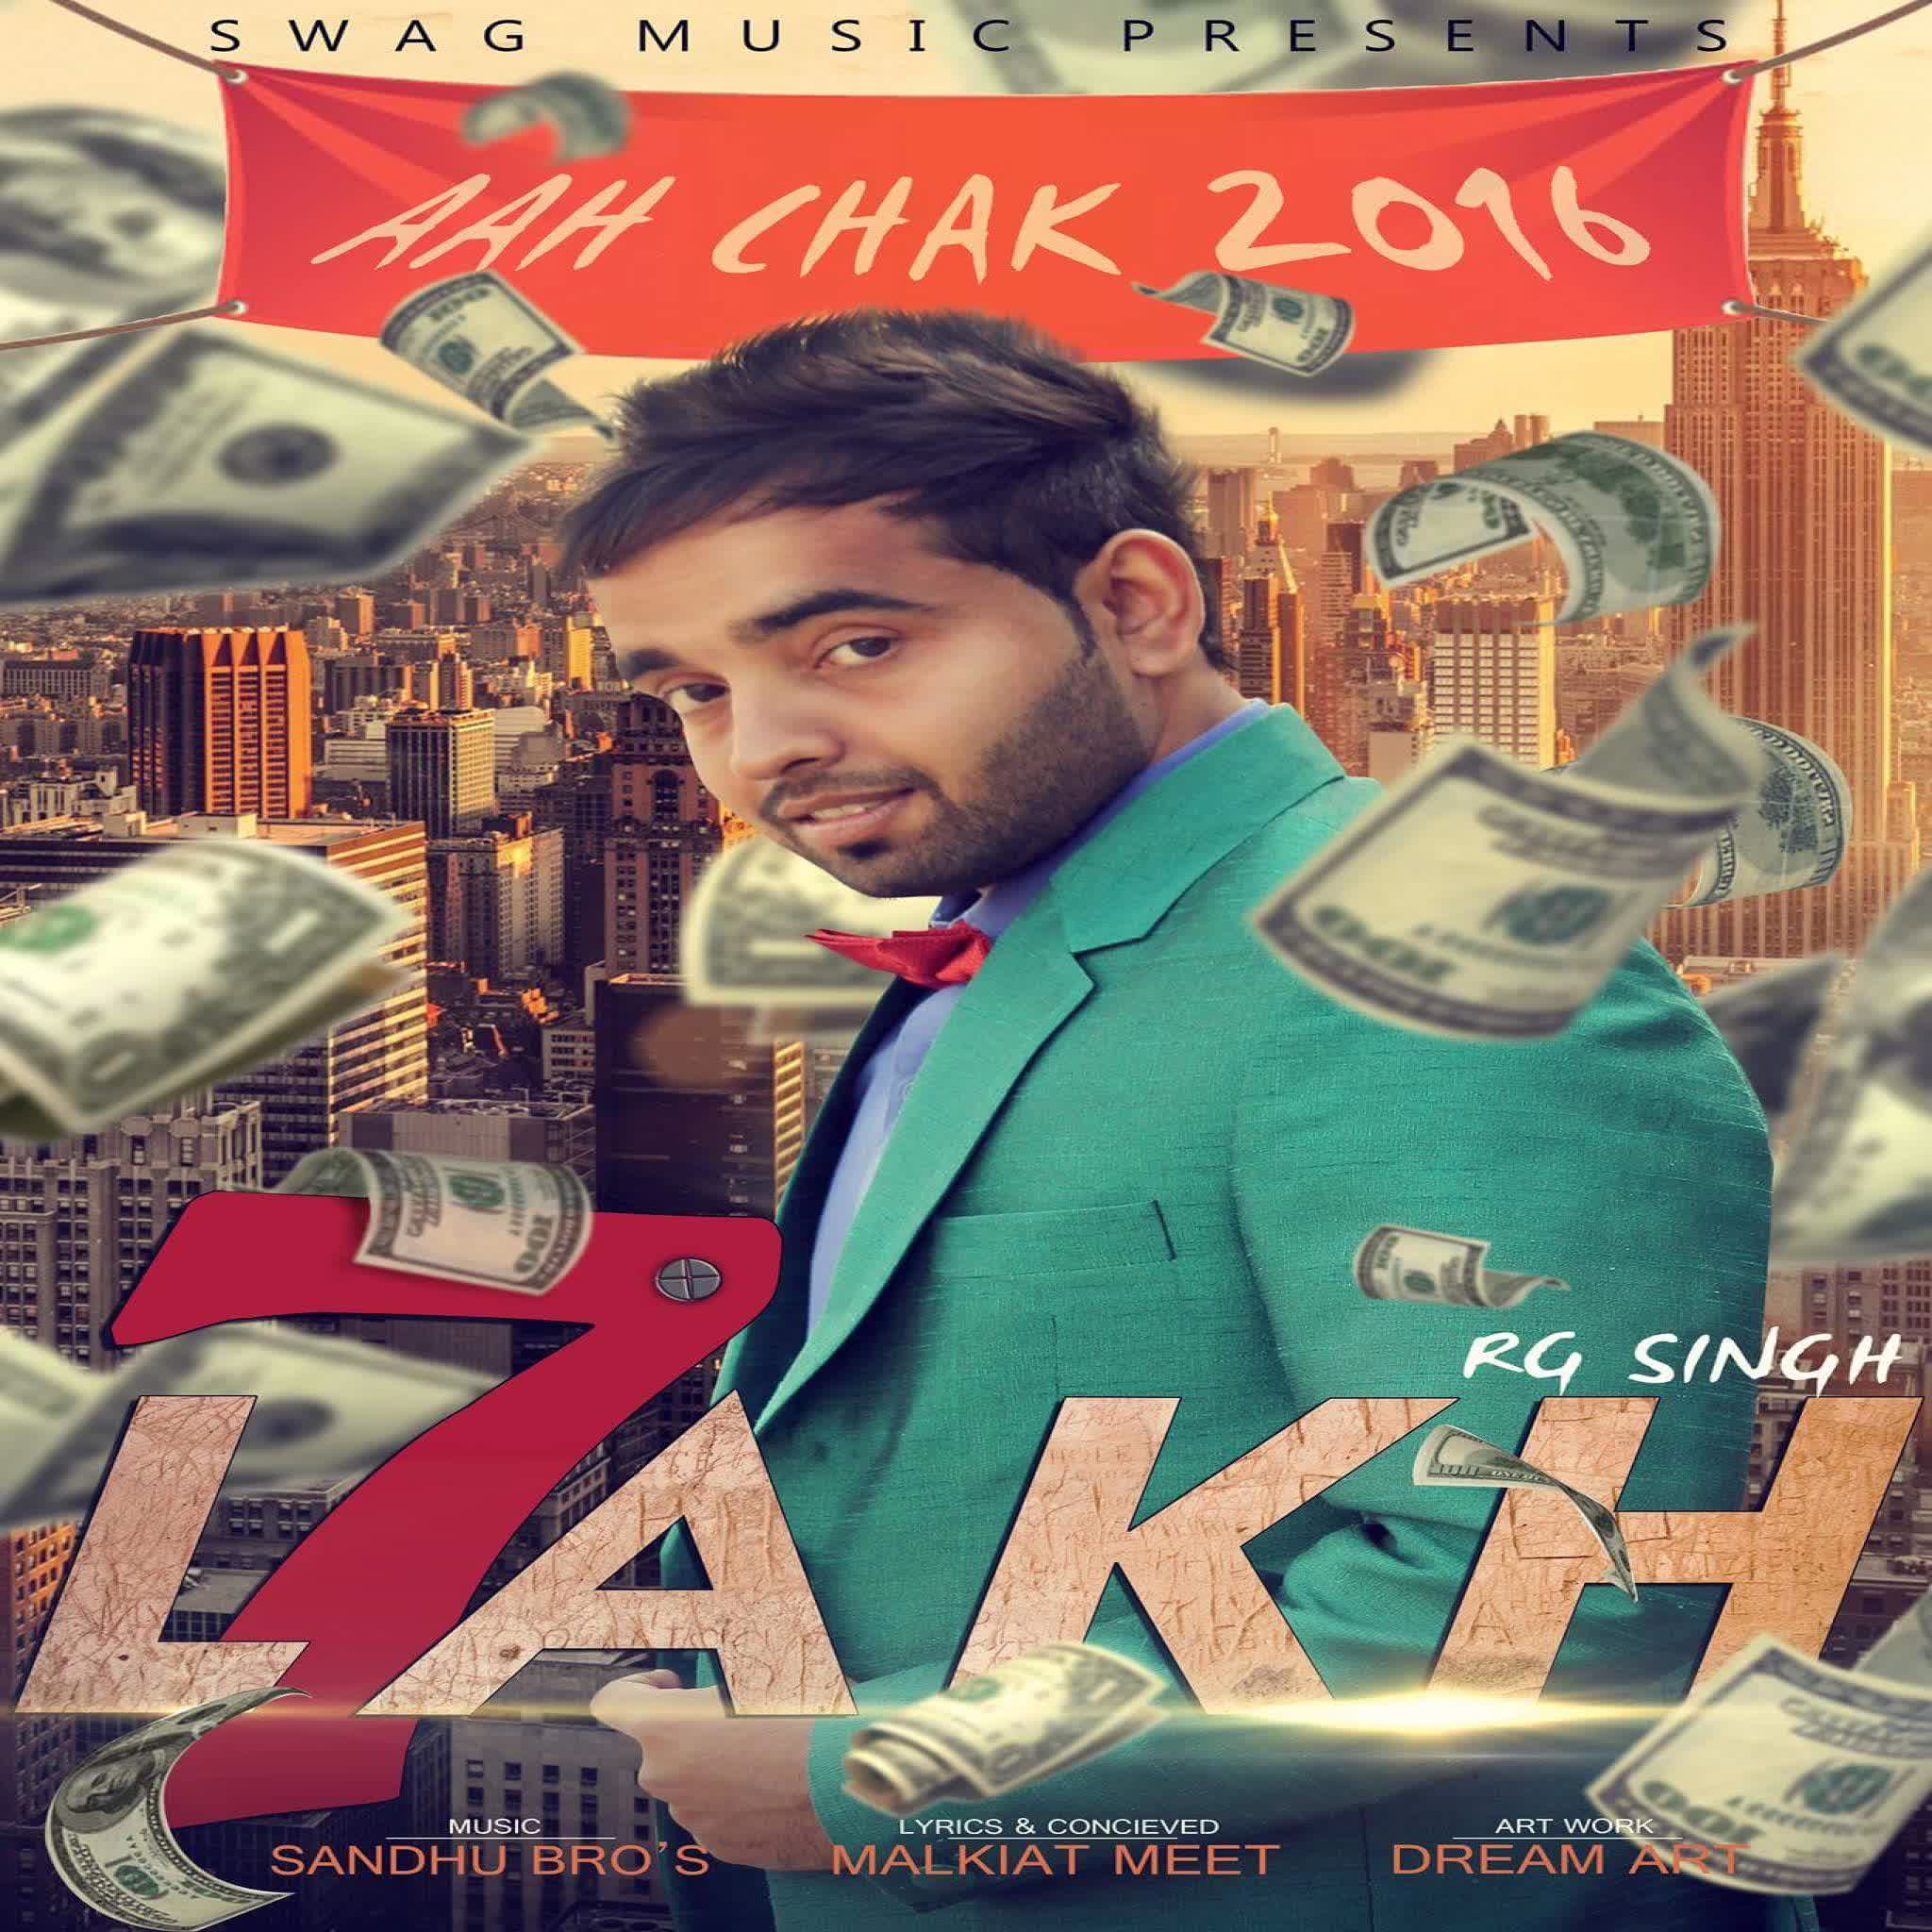 7 Lakh (Aah Chak 2016) Rg Singh Mp3 song download